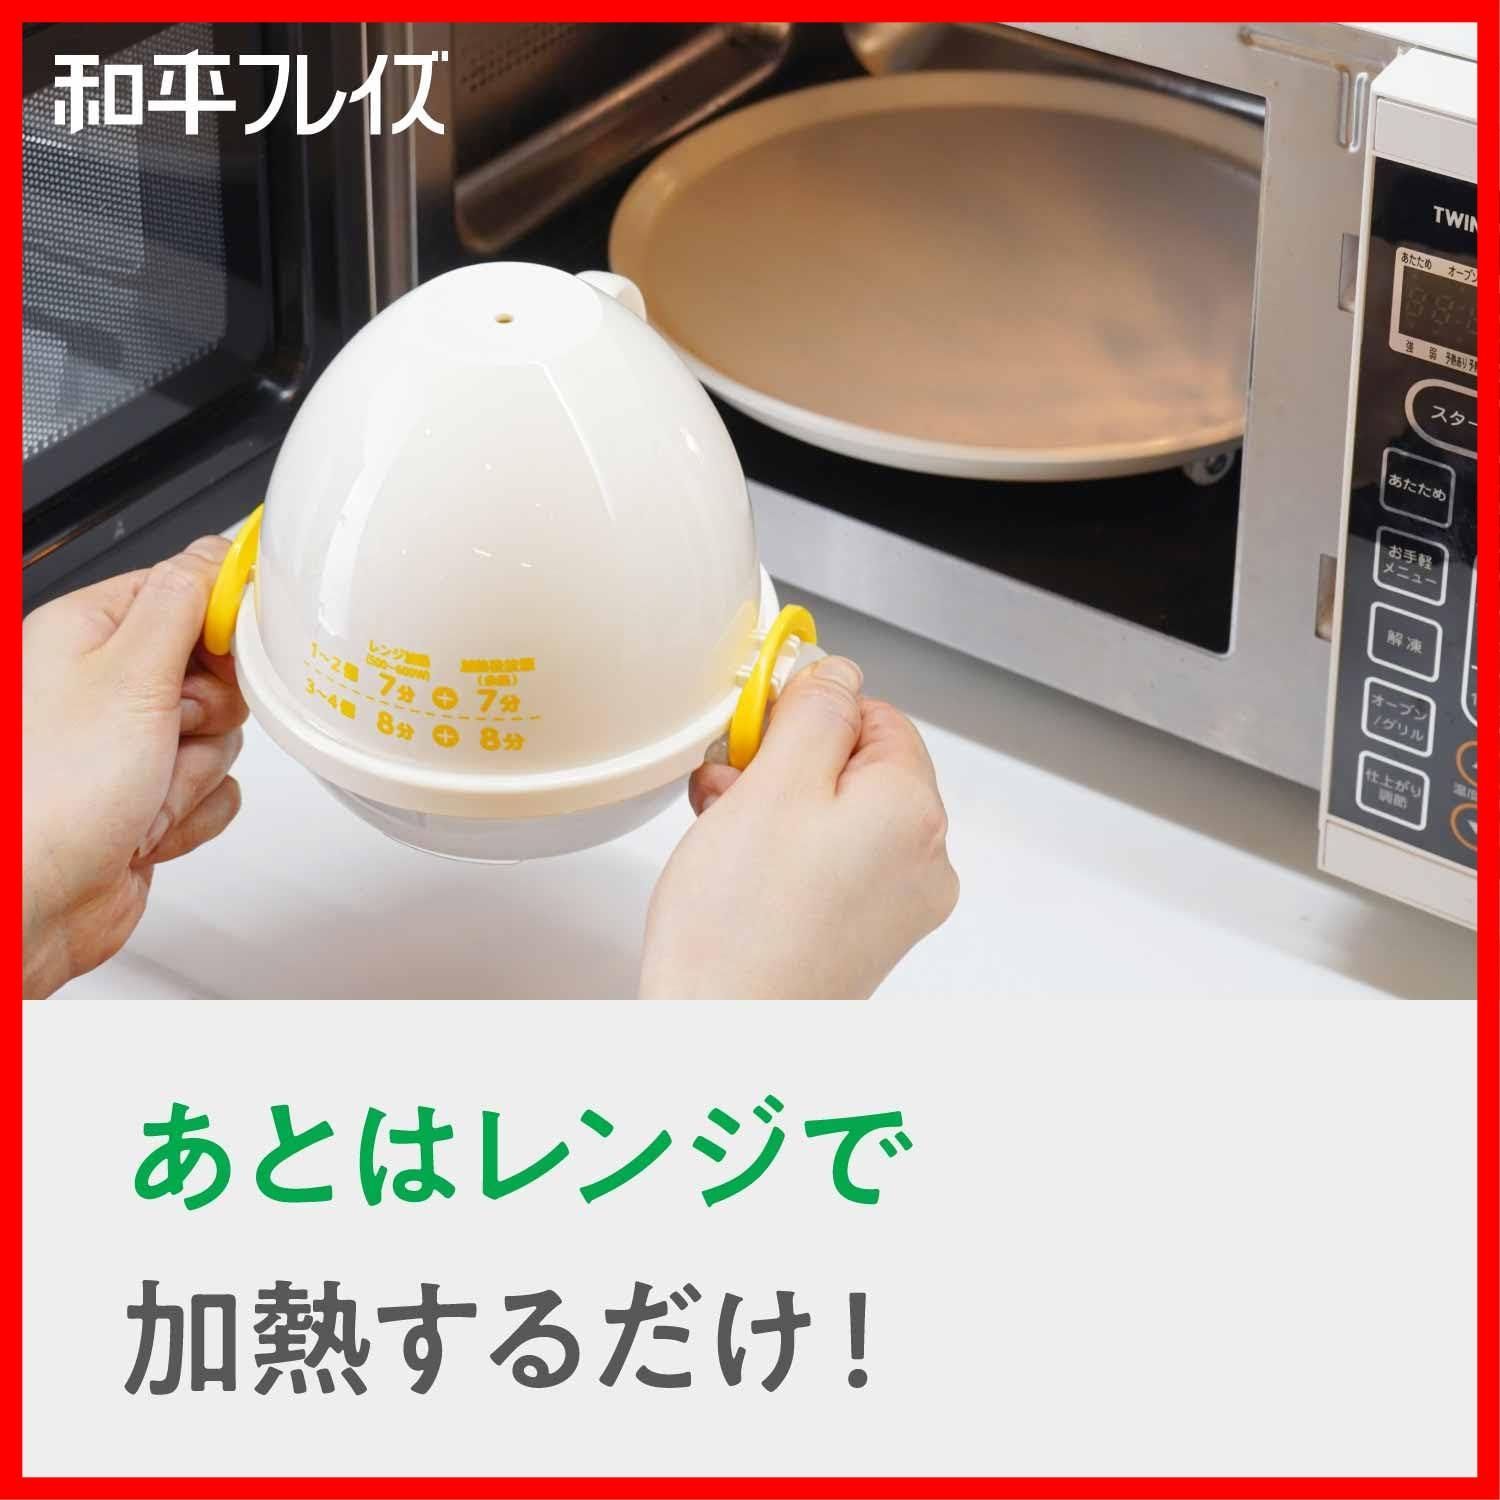 【即発】和平フレイズ 電子レンジでらくちん! ゆで卵 4個用 調理 簡単 時短 キッチンアシスト AME-7394